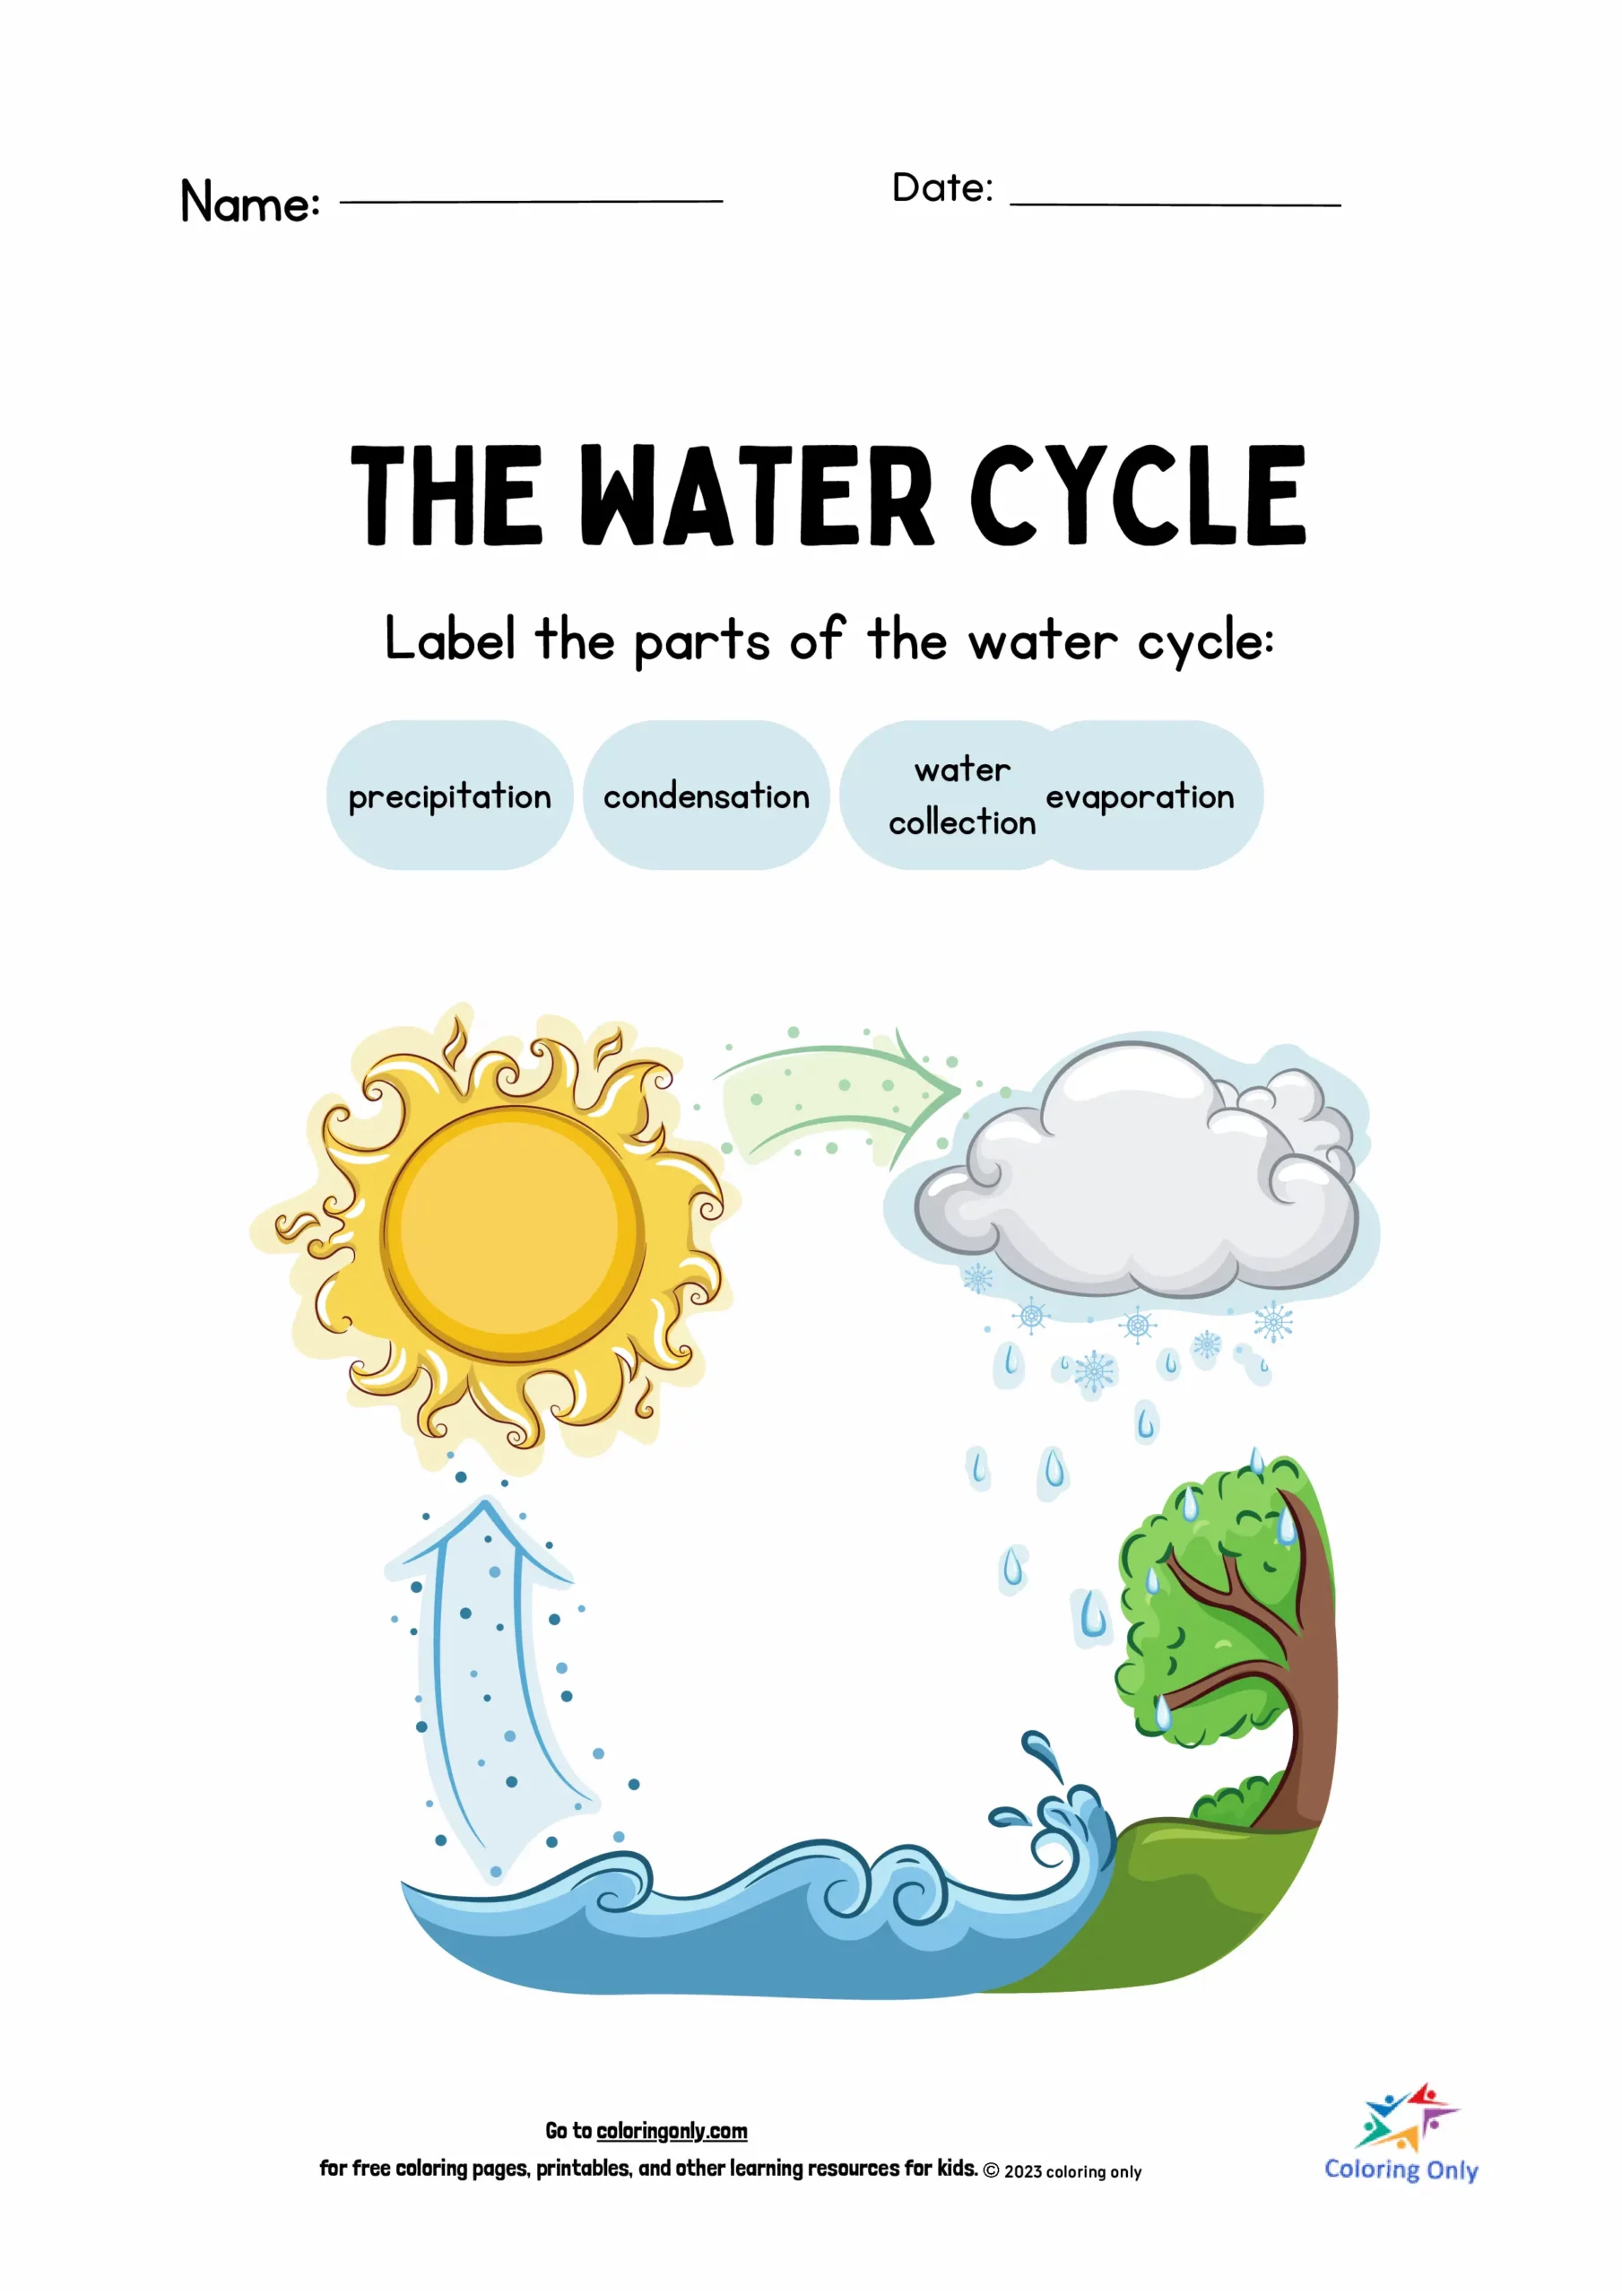 Der Wasserkreislauf